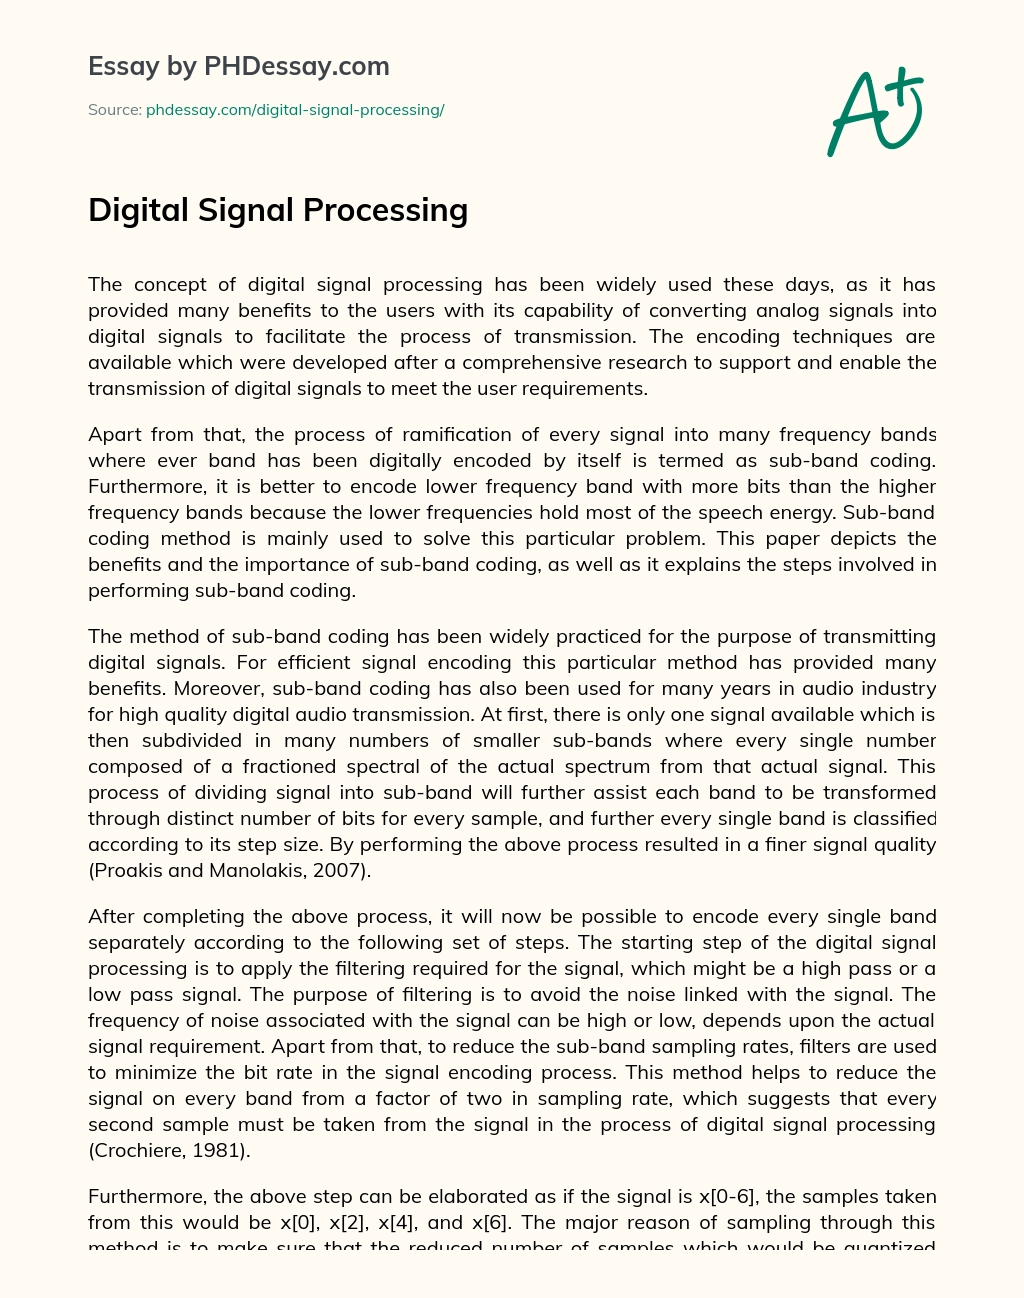 Digital Signal Processing essay